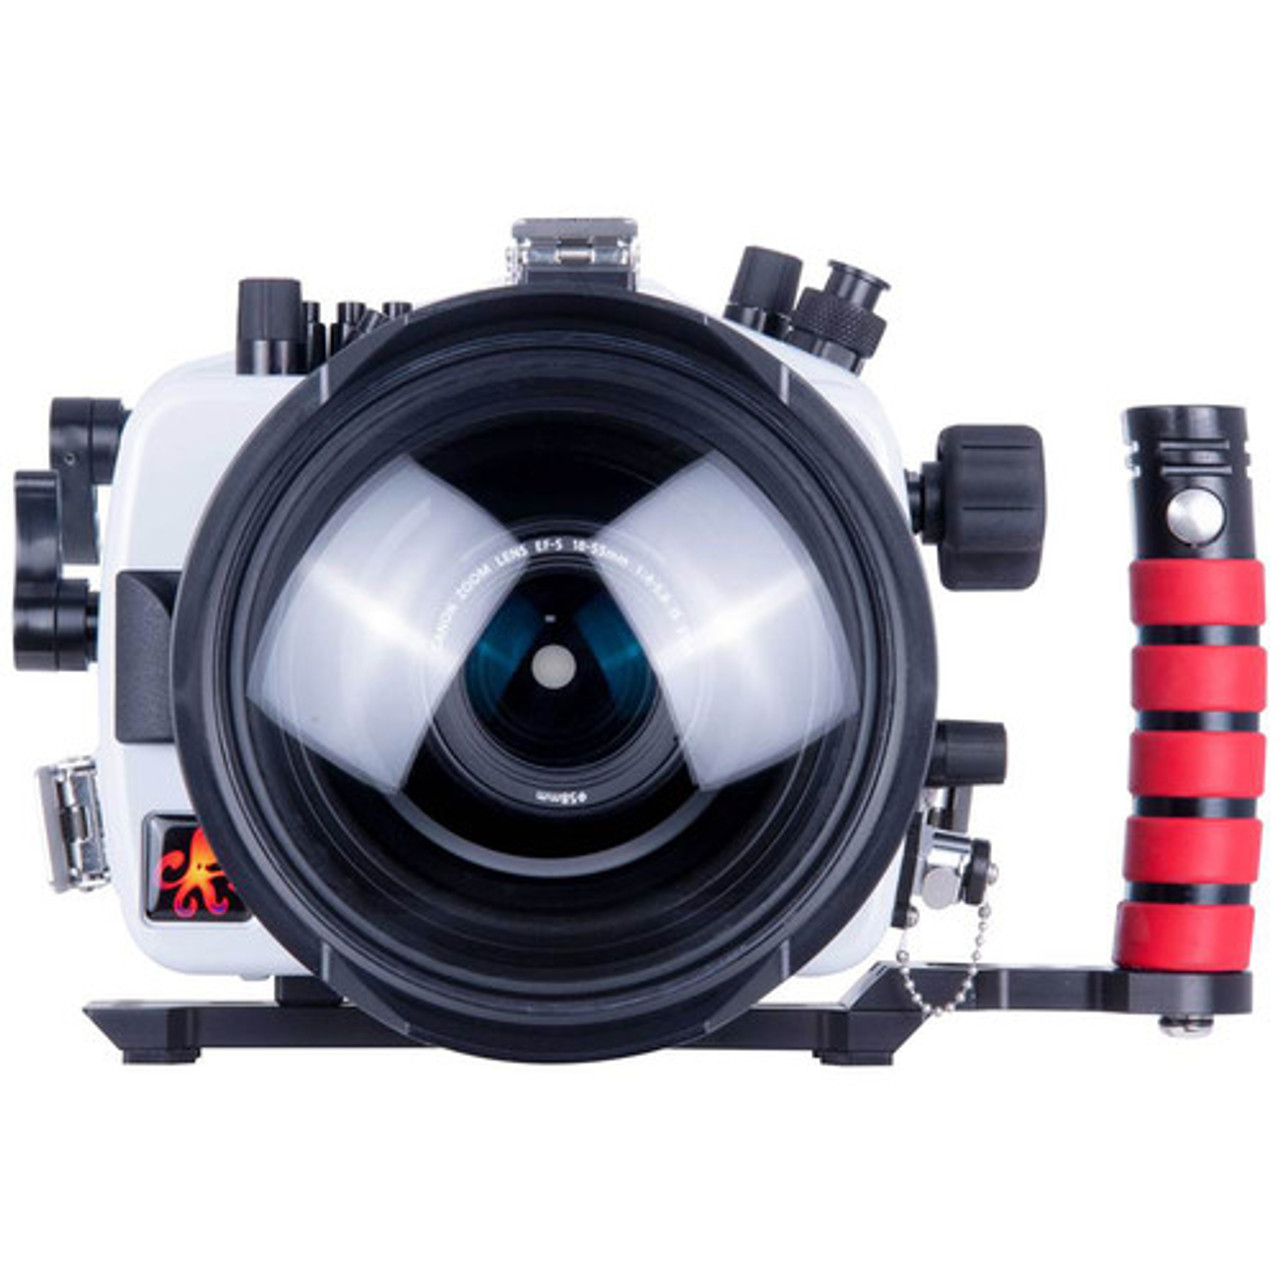 Canon EOS 90D DSLR Camera 